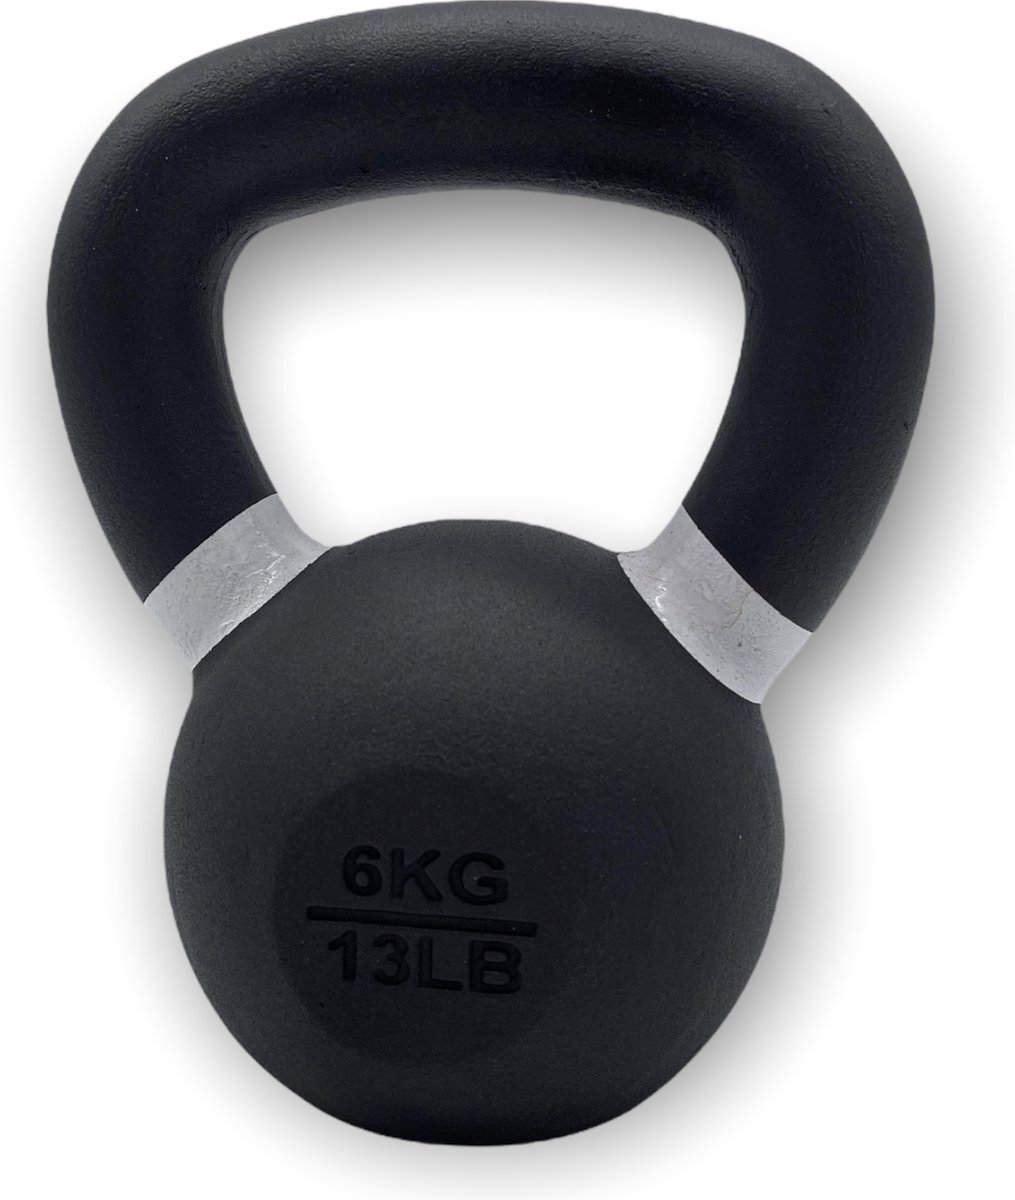 Padisport Kettlebell 6 kg - kettlebell - 6 kg - cast iron - gietijzer - fitness - gewicht